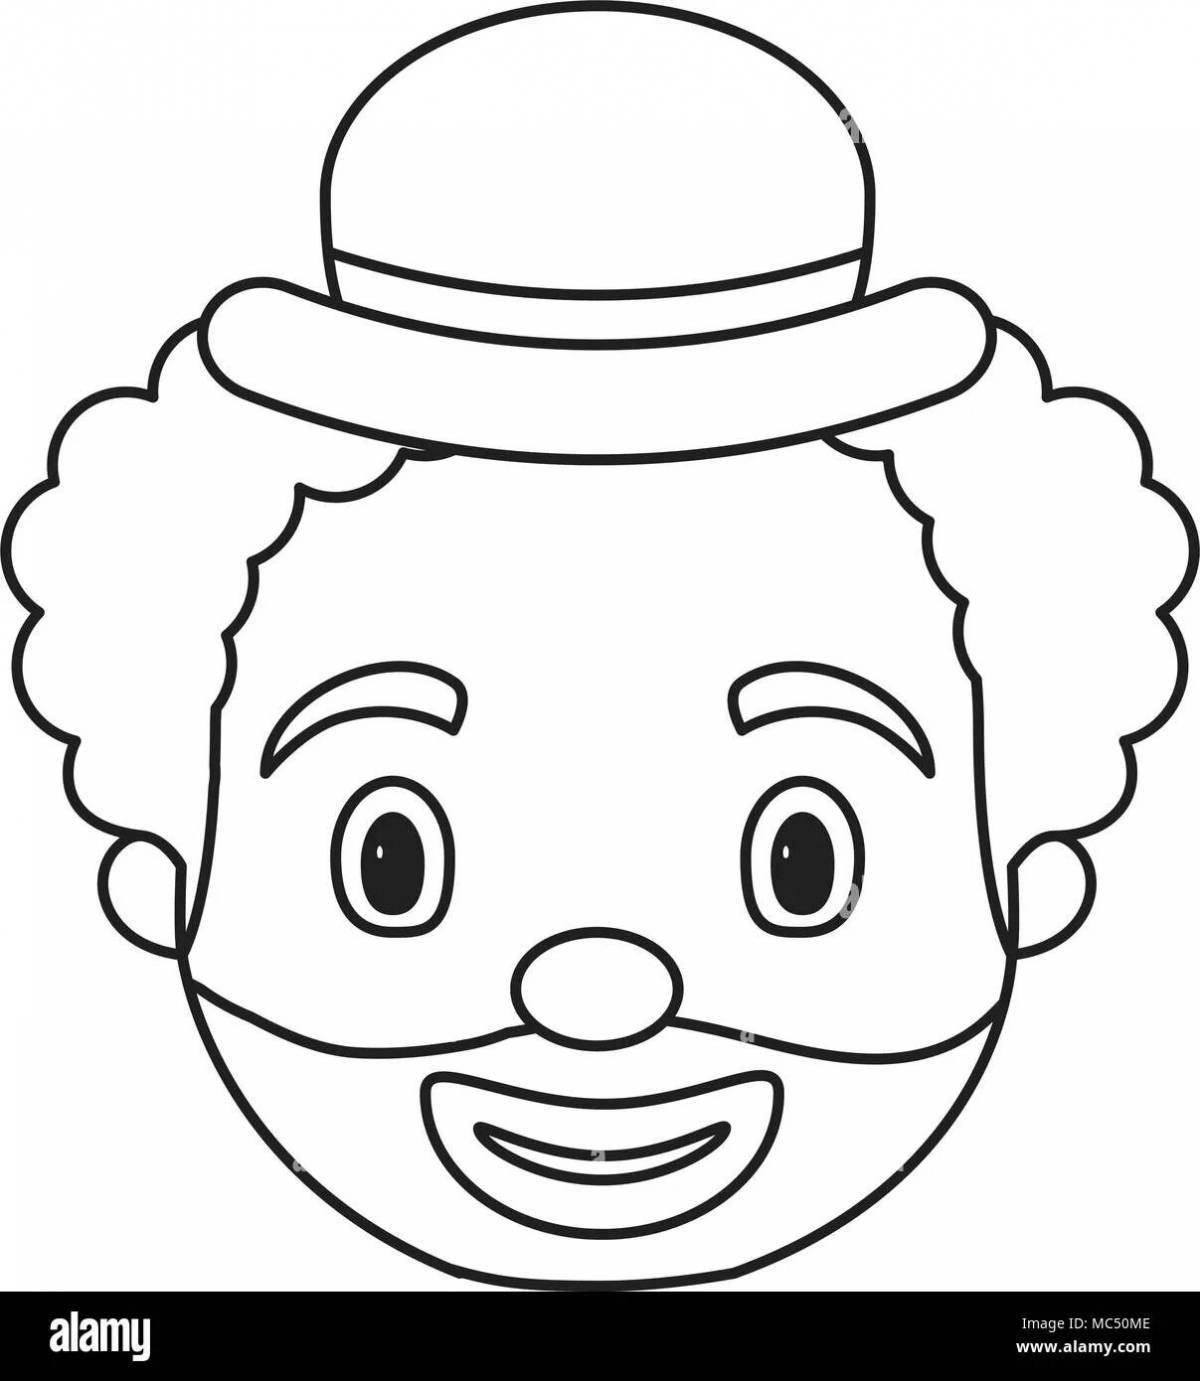 Игривая страница раскраски лица клоуна для детей